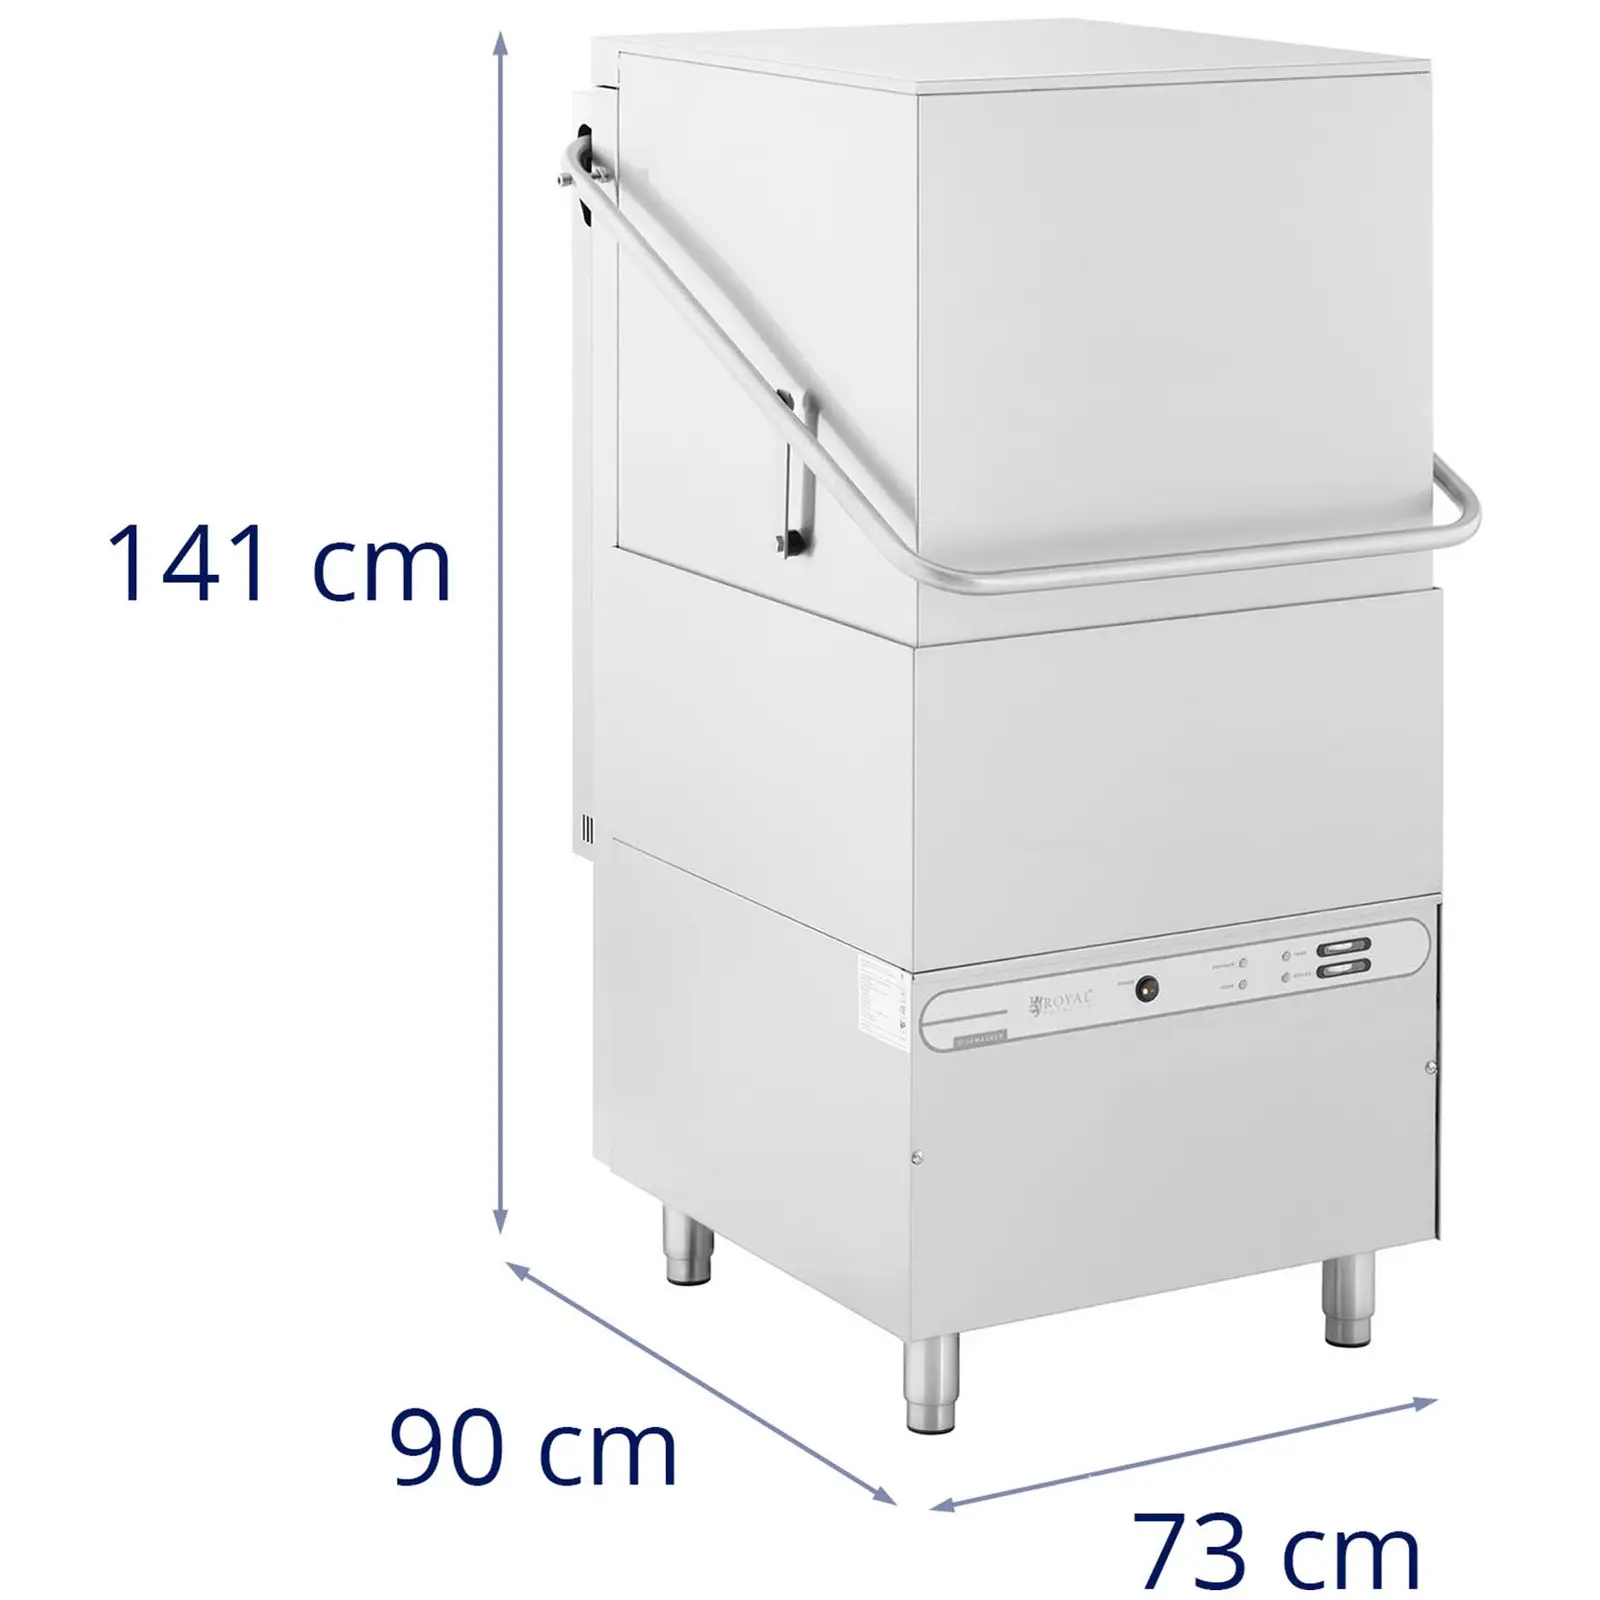 Ipari mosogatógép - 8600 W - Royal Catering - akár 60 mosogatási ciklus/óra